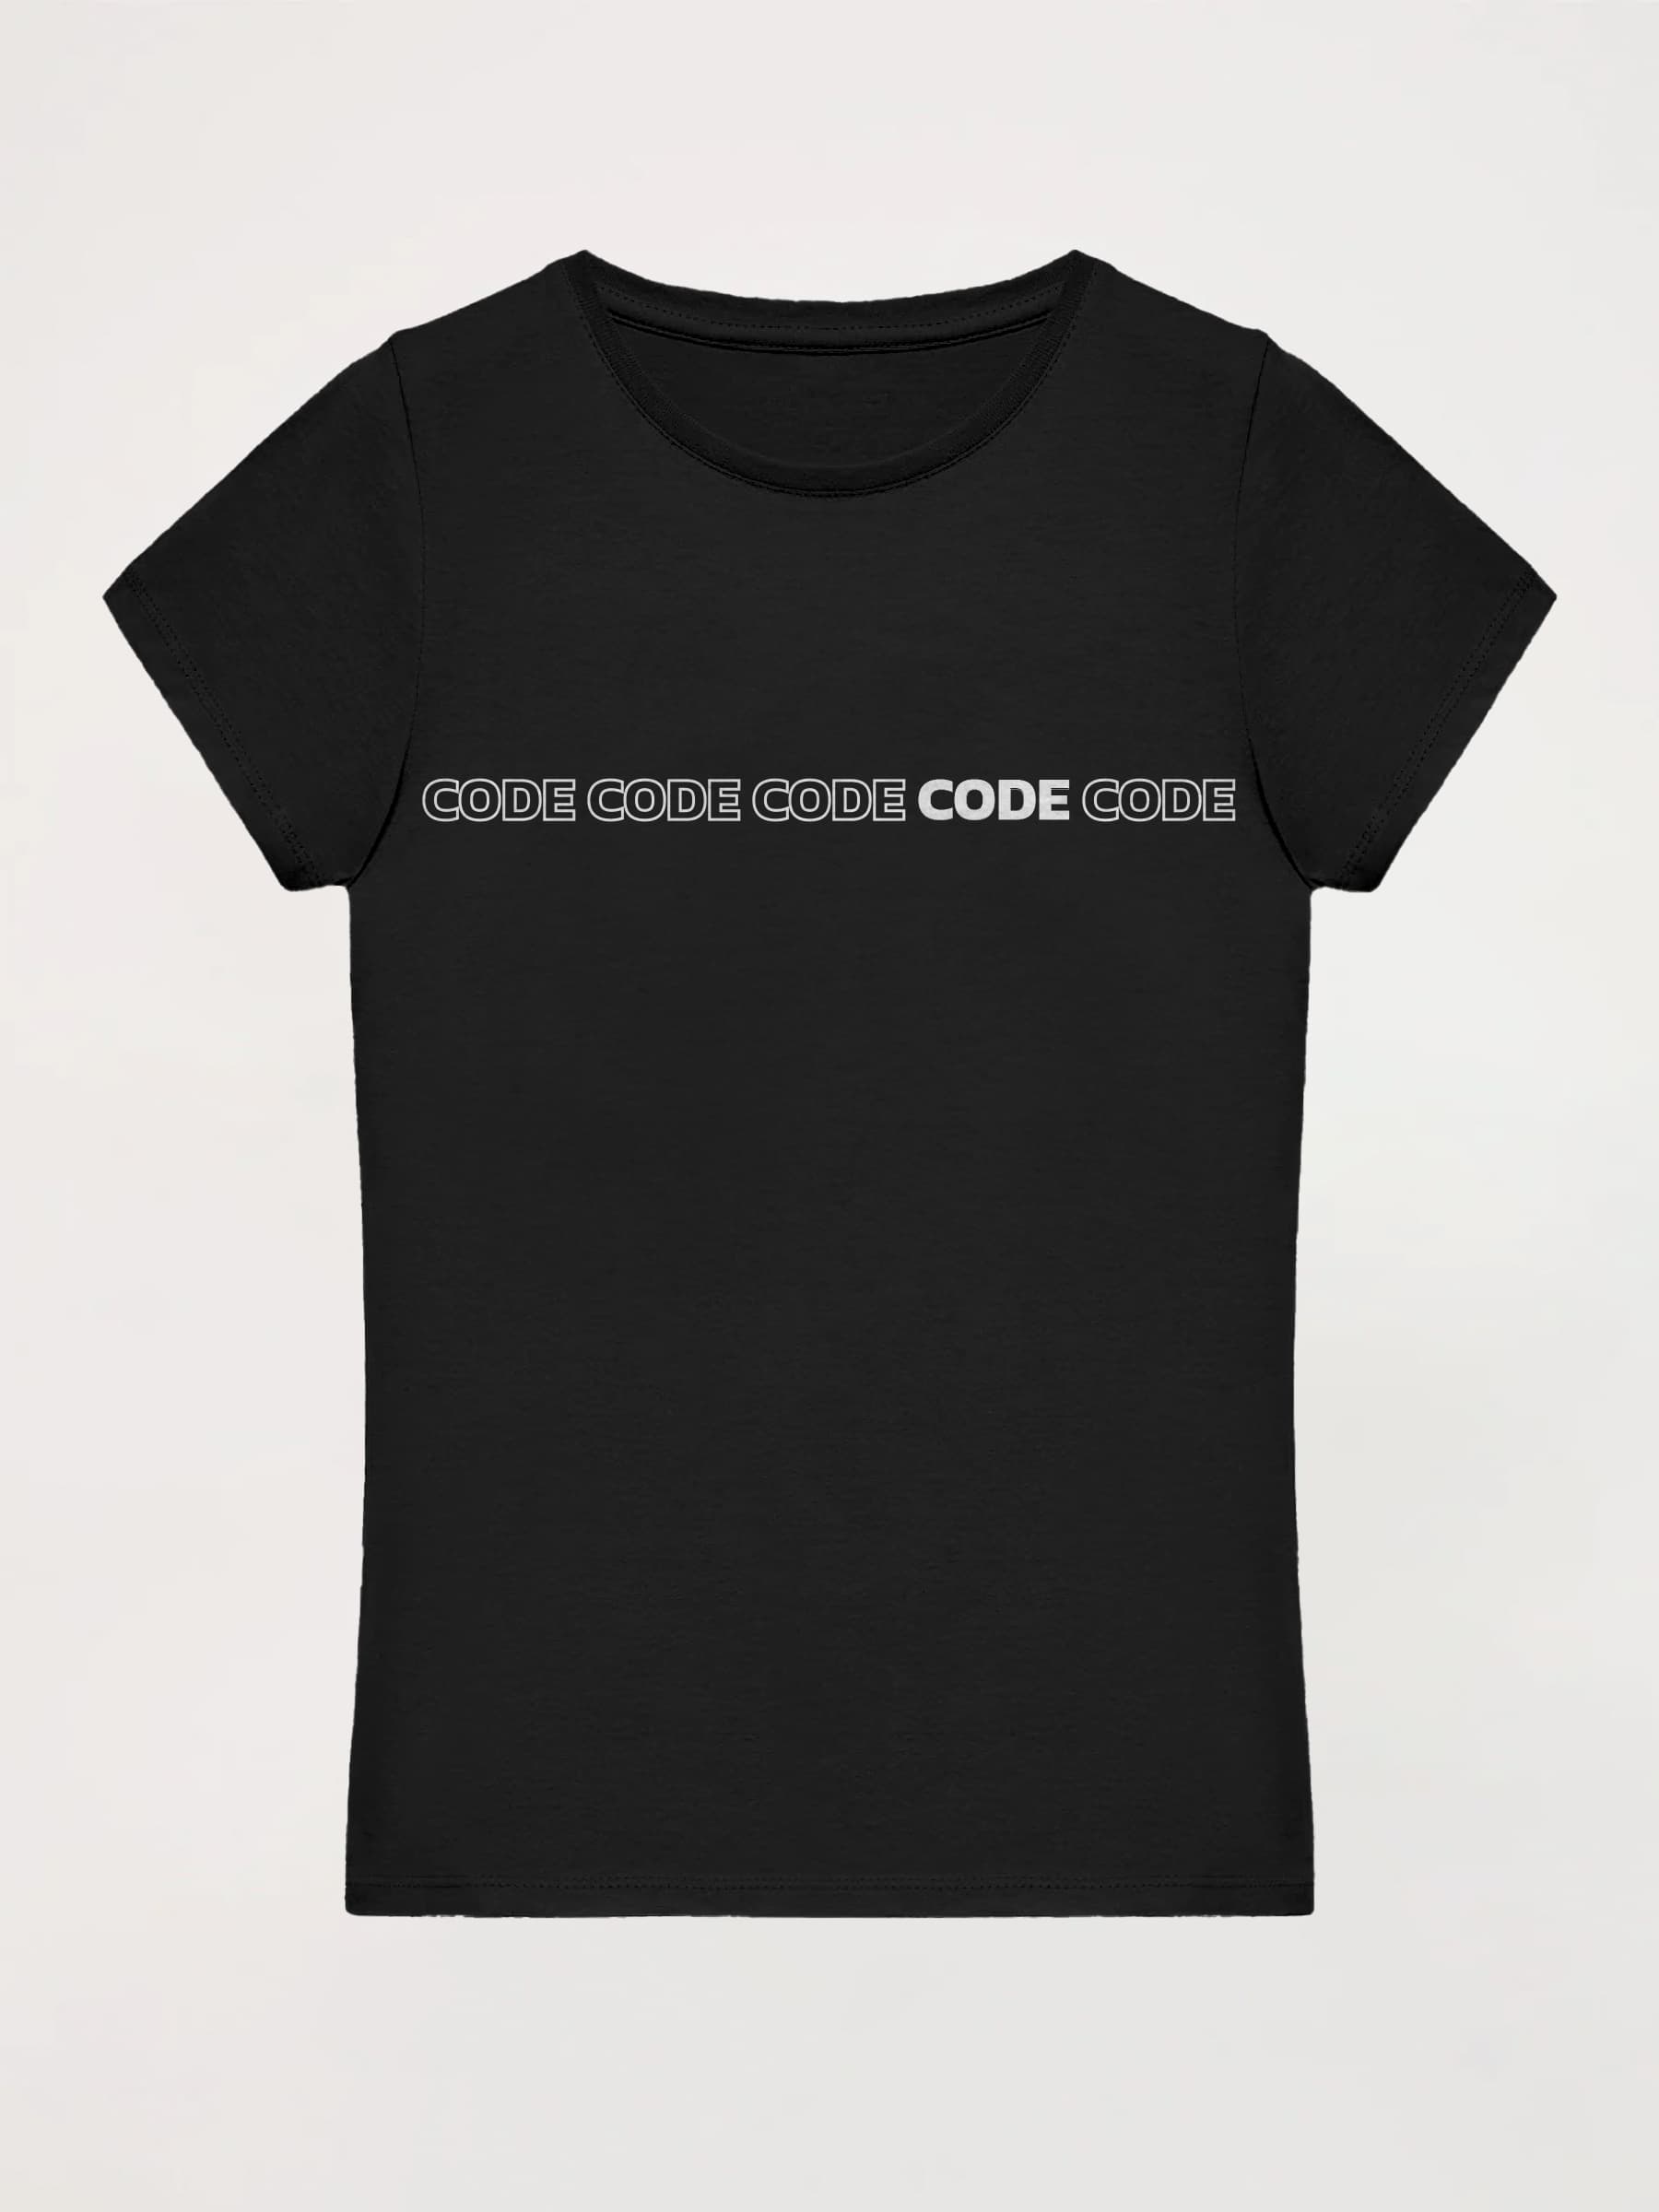 Camiseta mujer Infinity Code